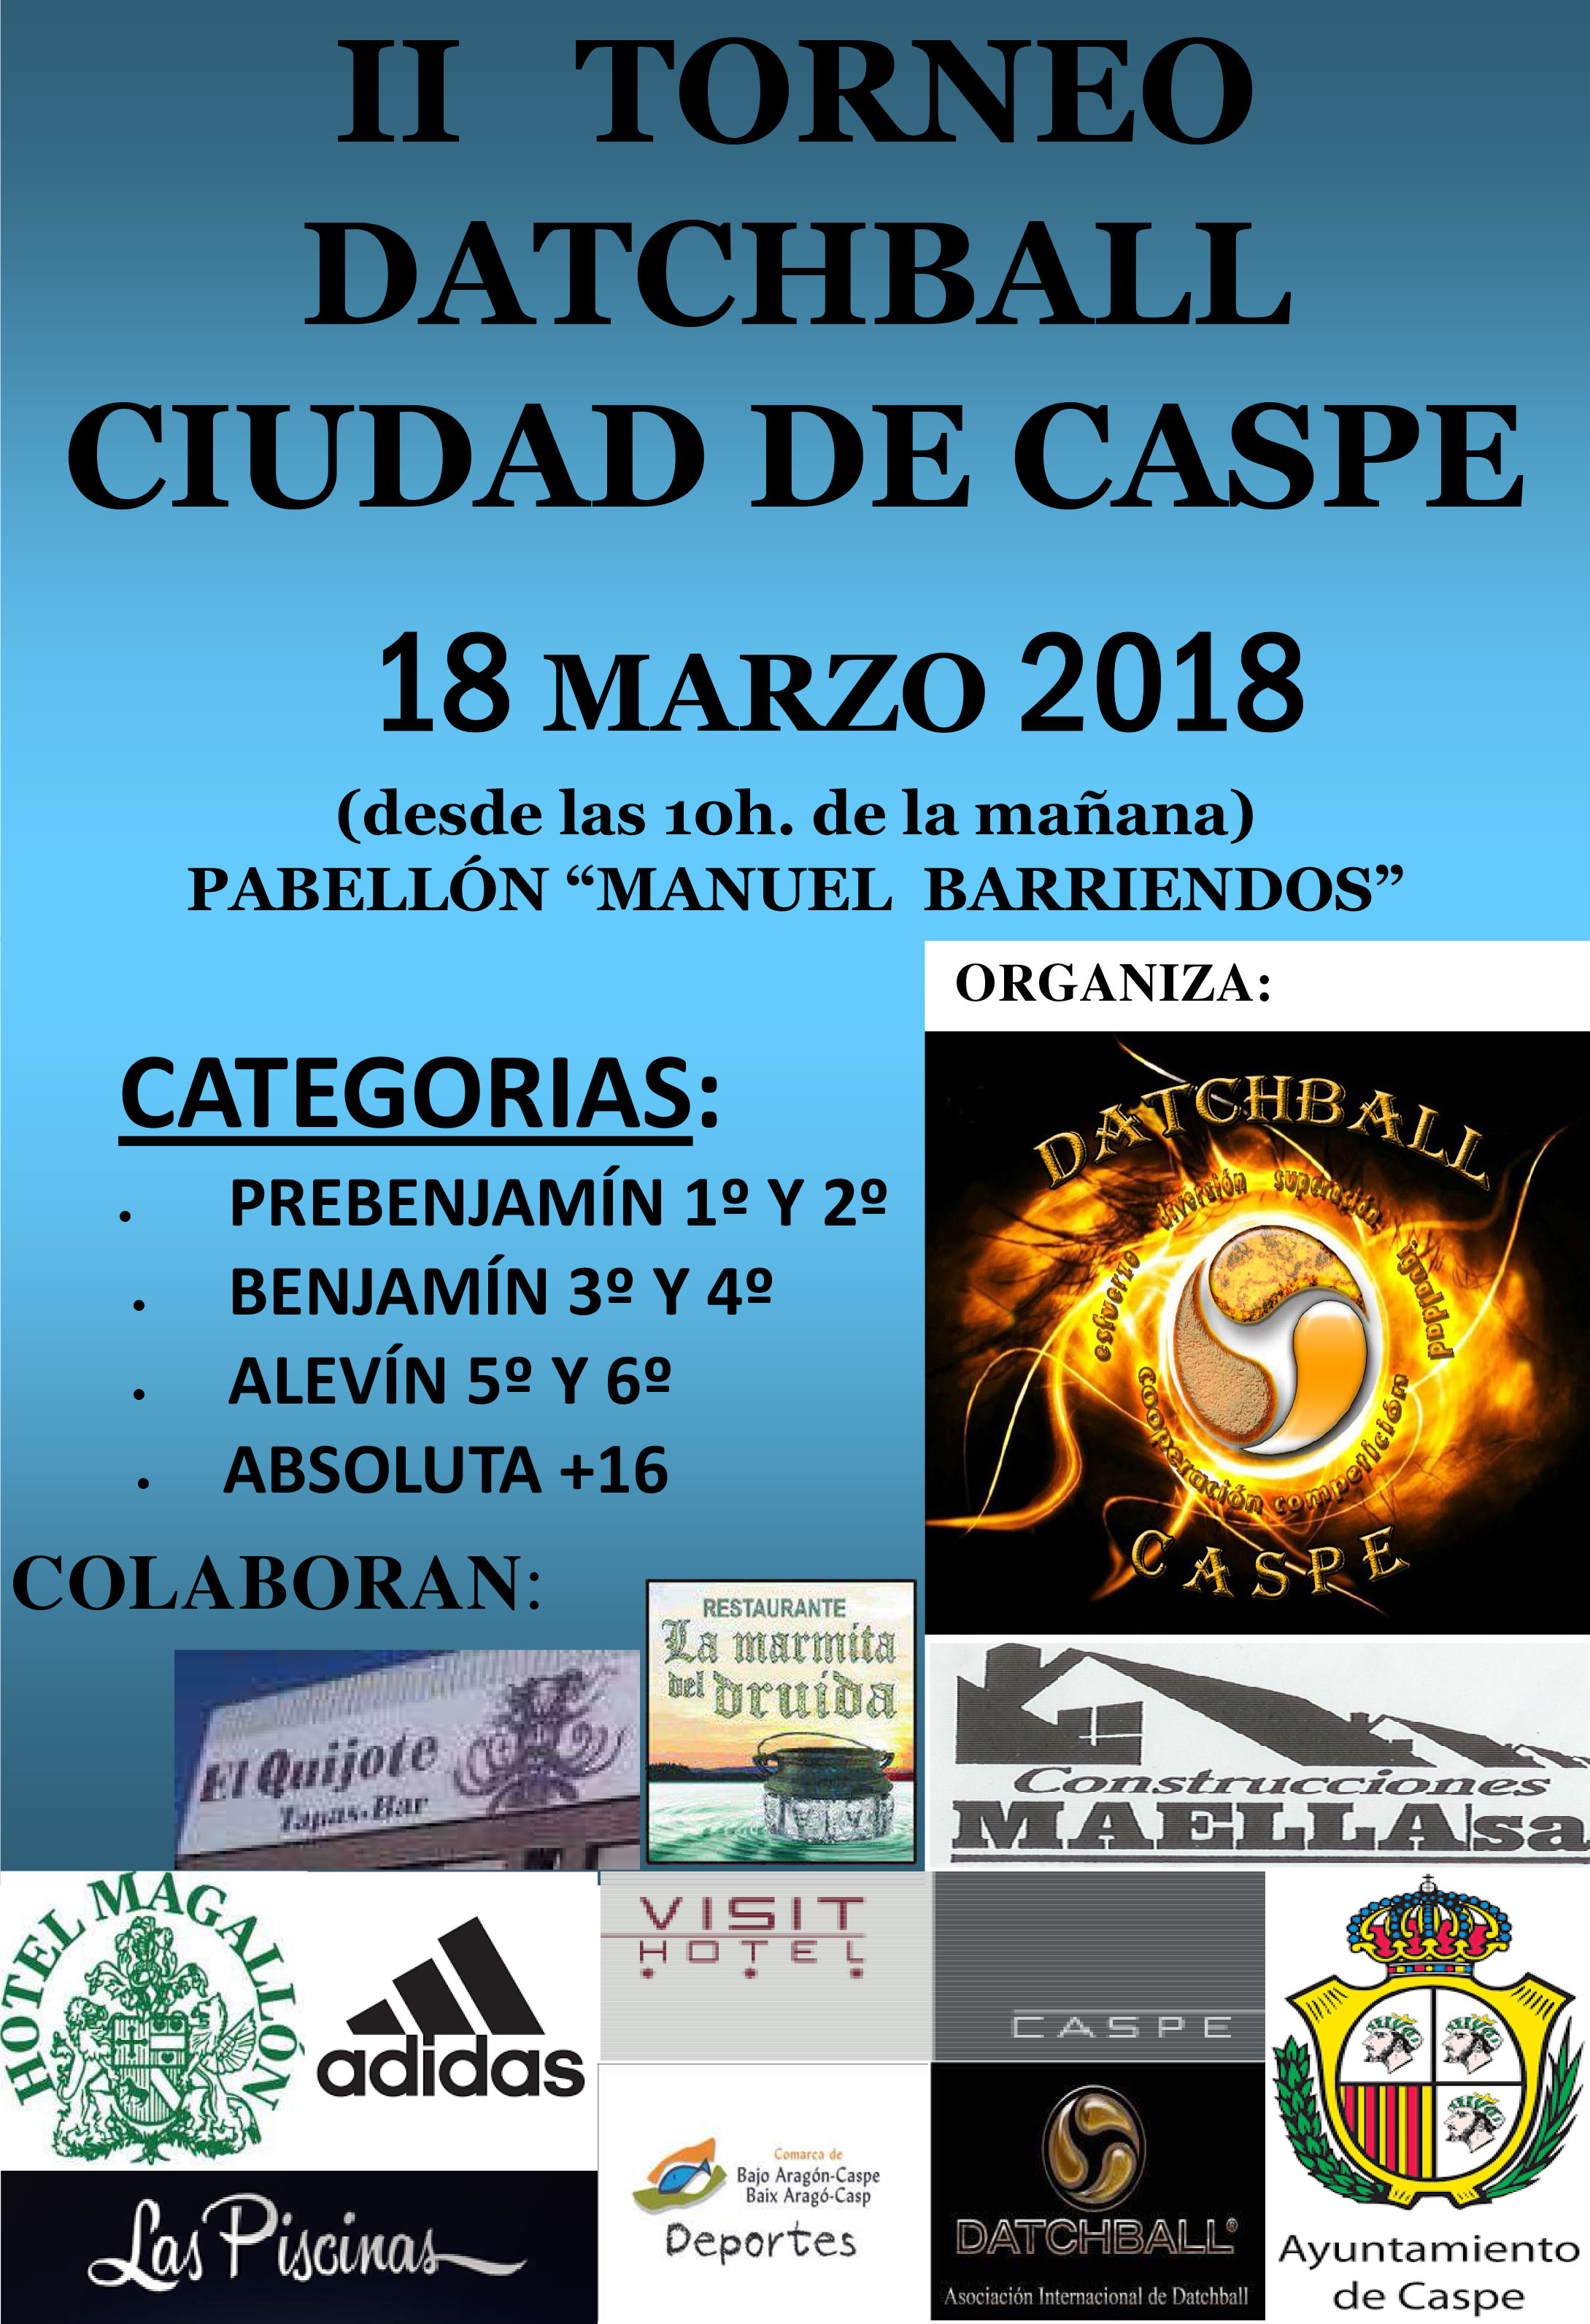 TORNEO DATCHBALL CIUDAD DE CASPE | Bienvenidos a la página oficial Caspe